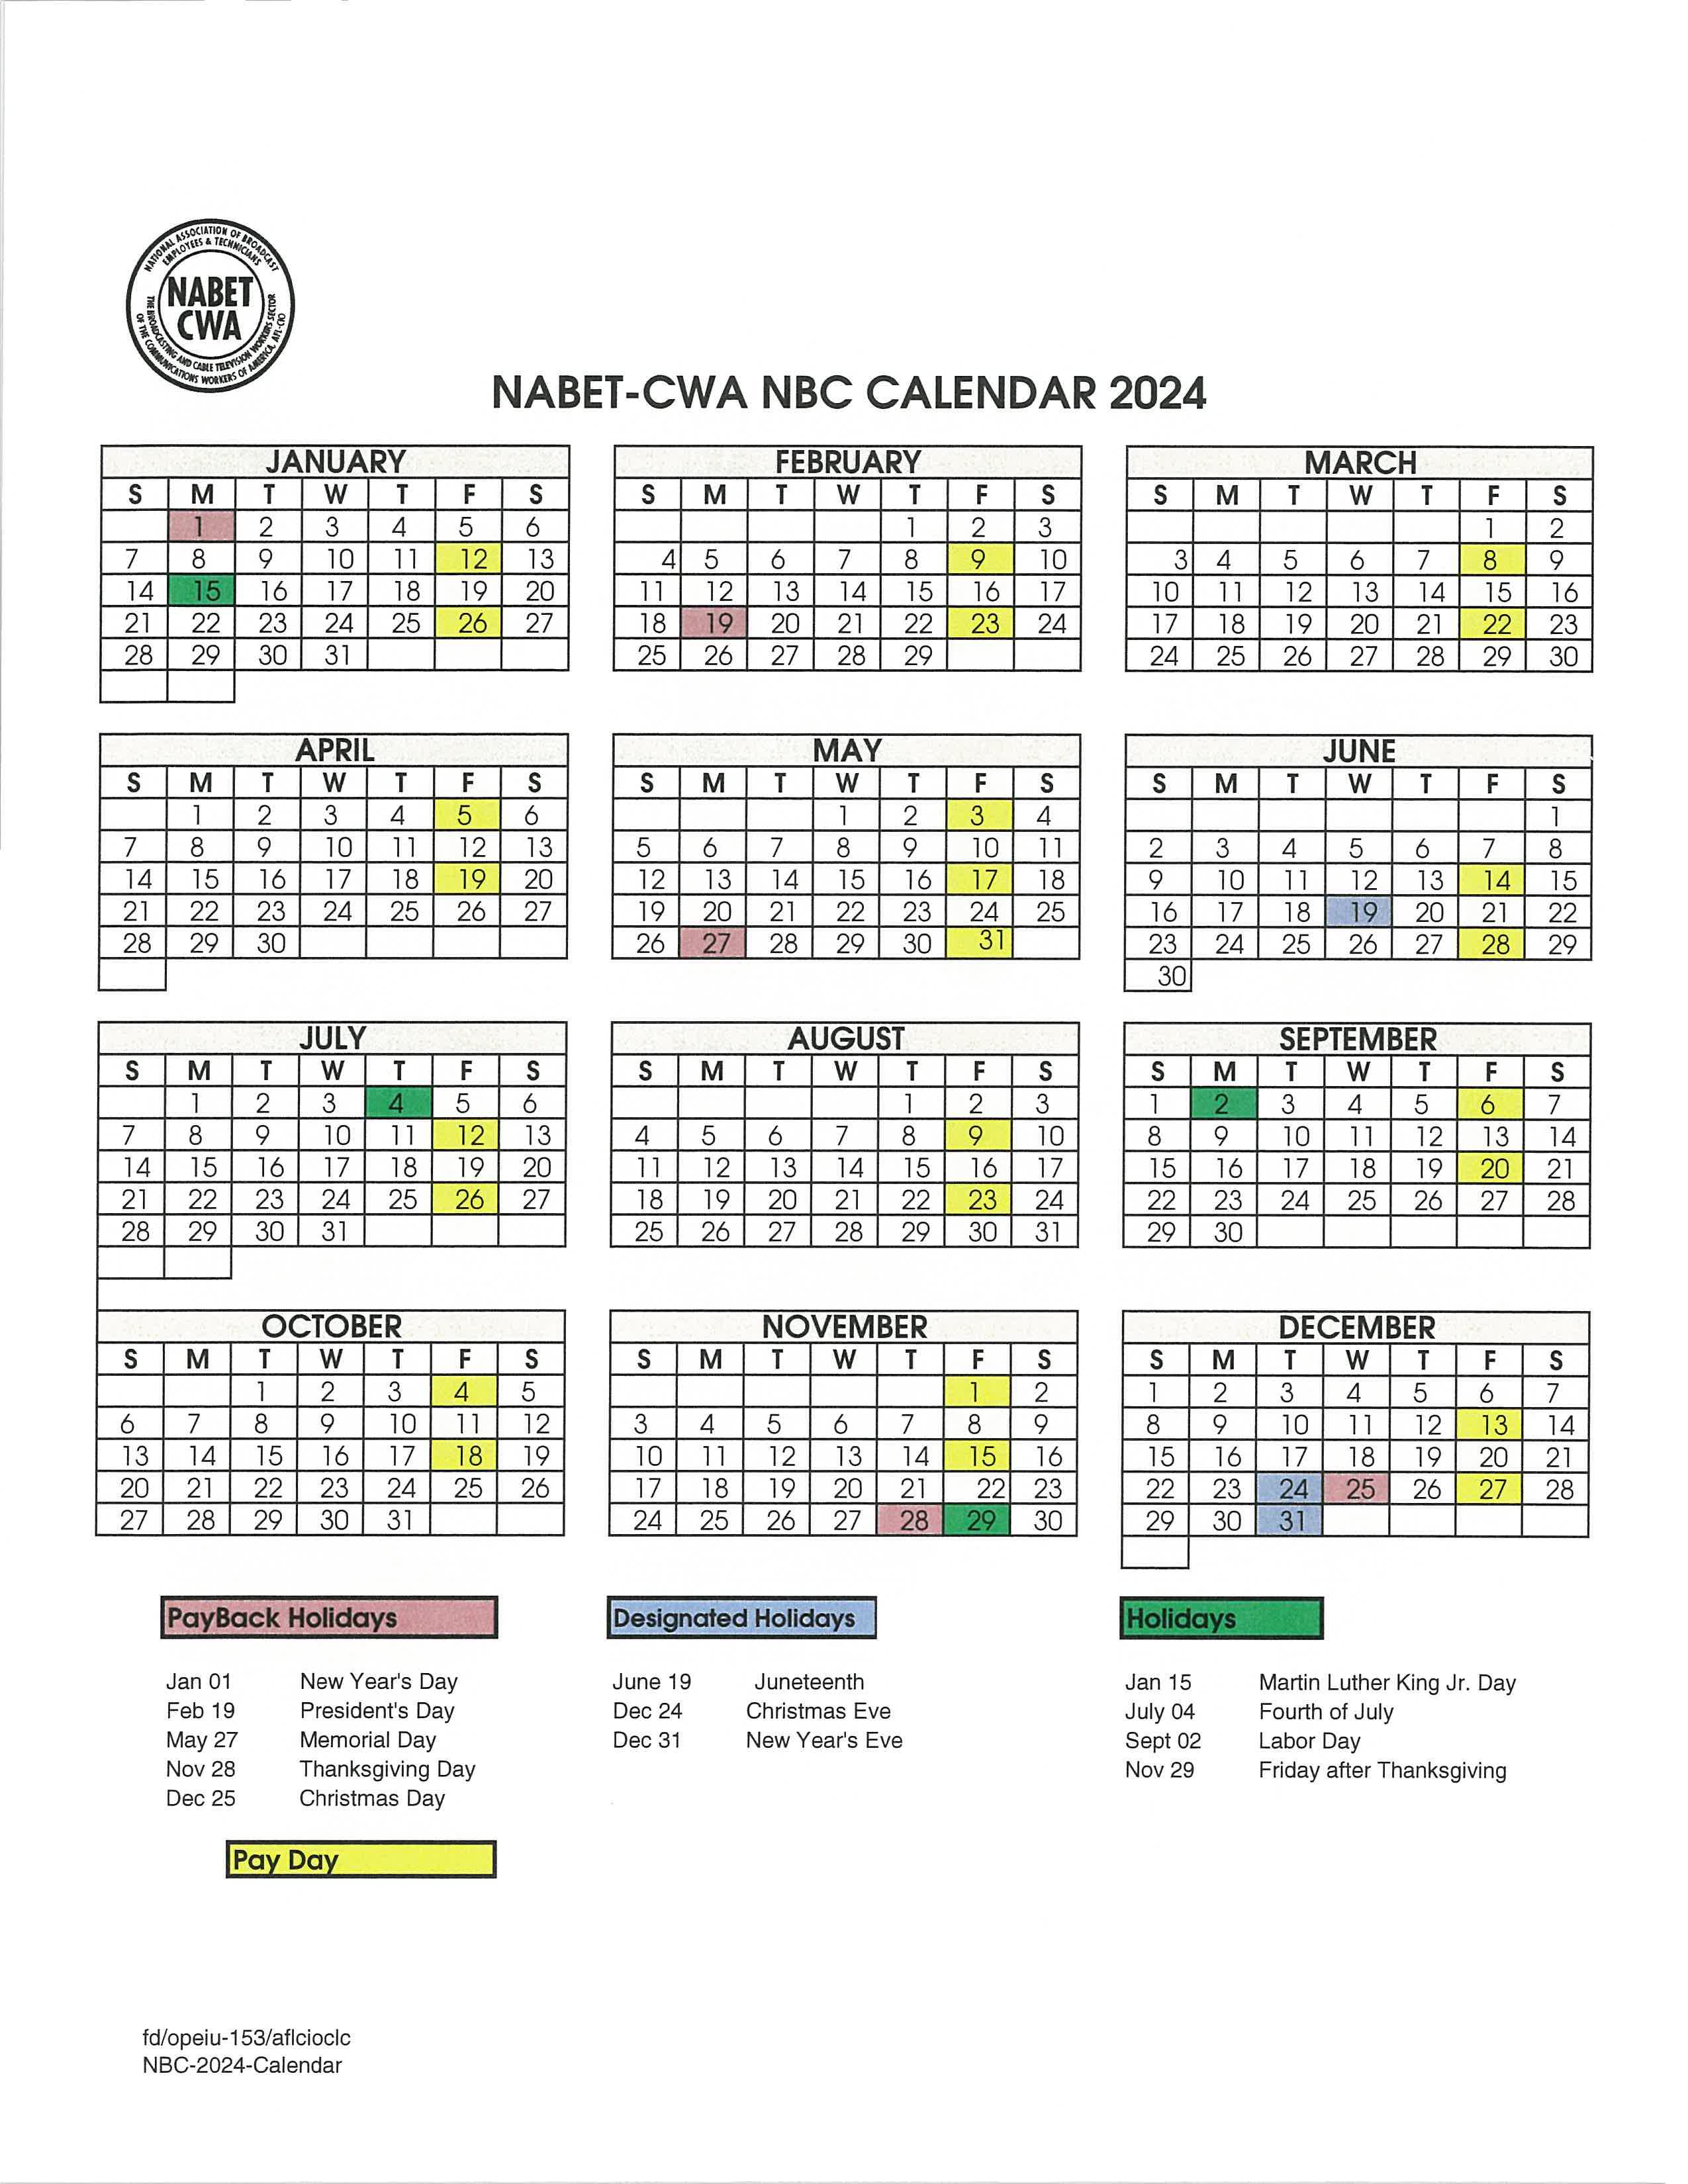 Revised NBC calendar 2024